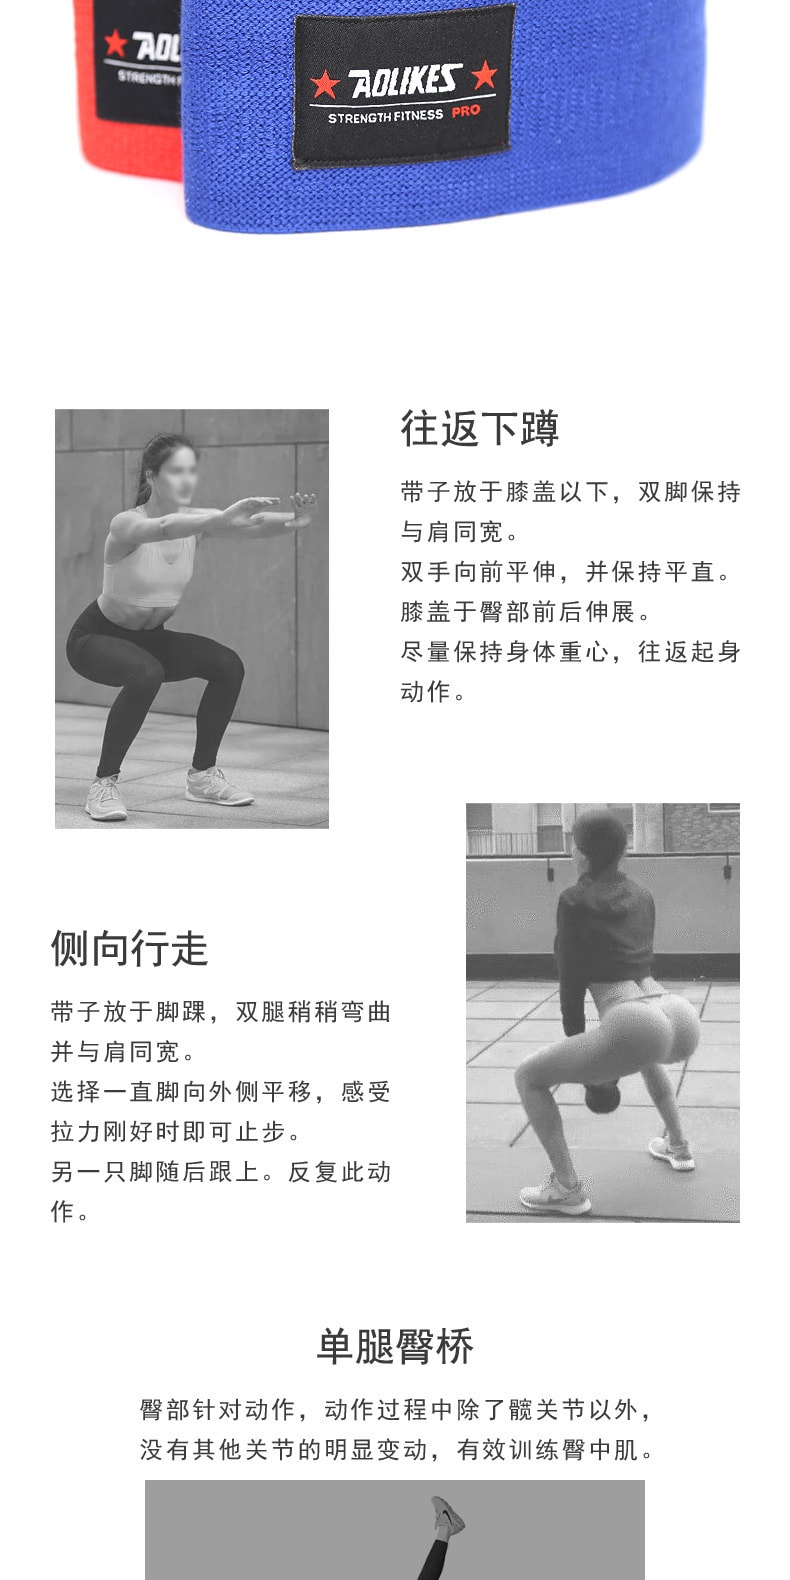 已淘汰[中國直郵]樂學辦公 瑜珈健身彈力帶 翹臀神器 粉紅色L碼 單裝